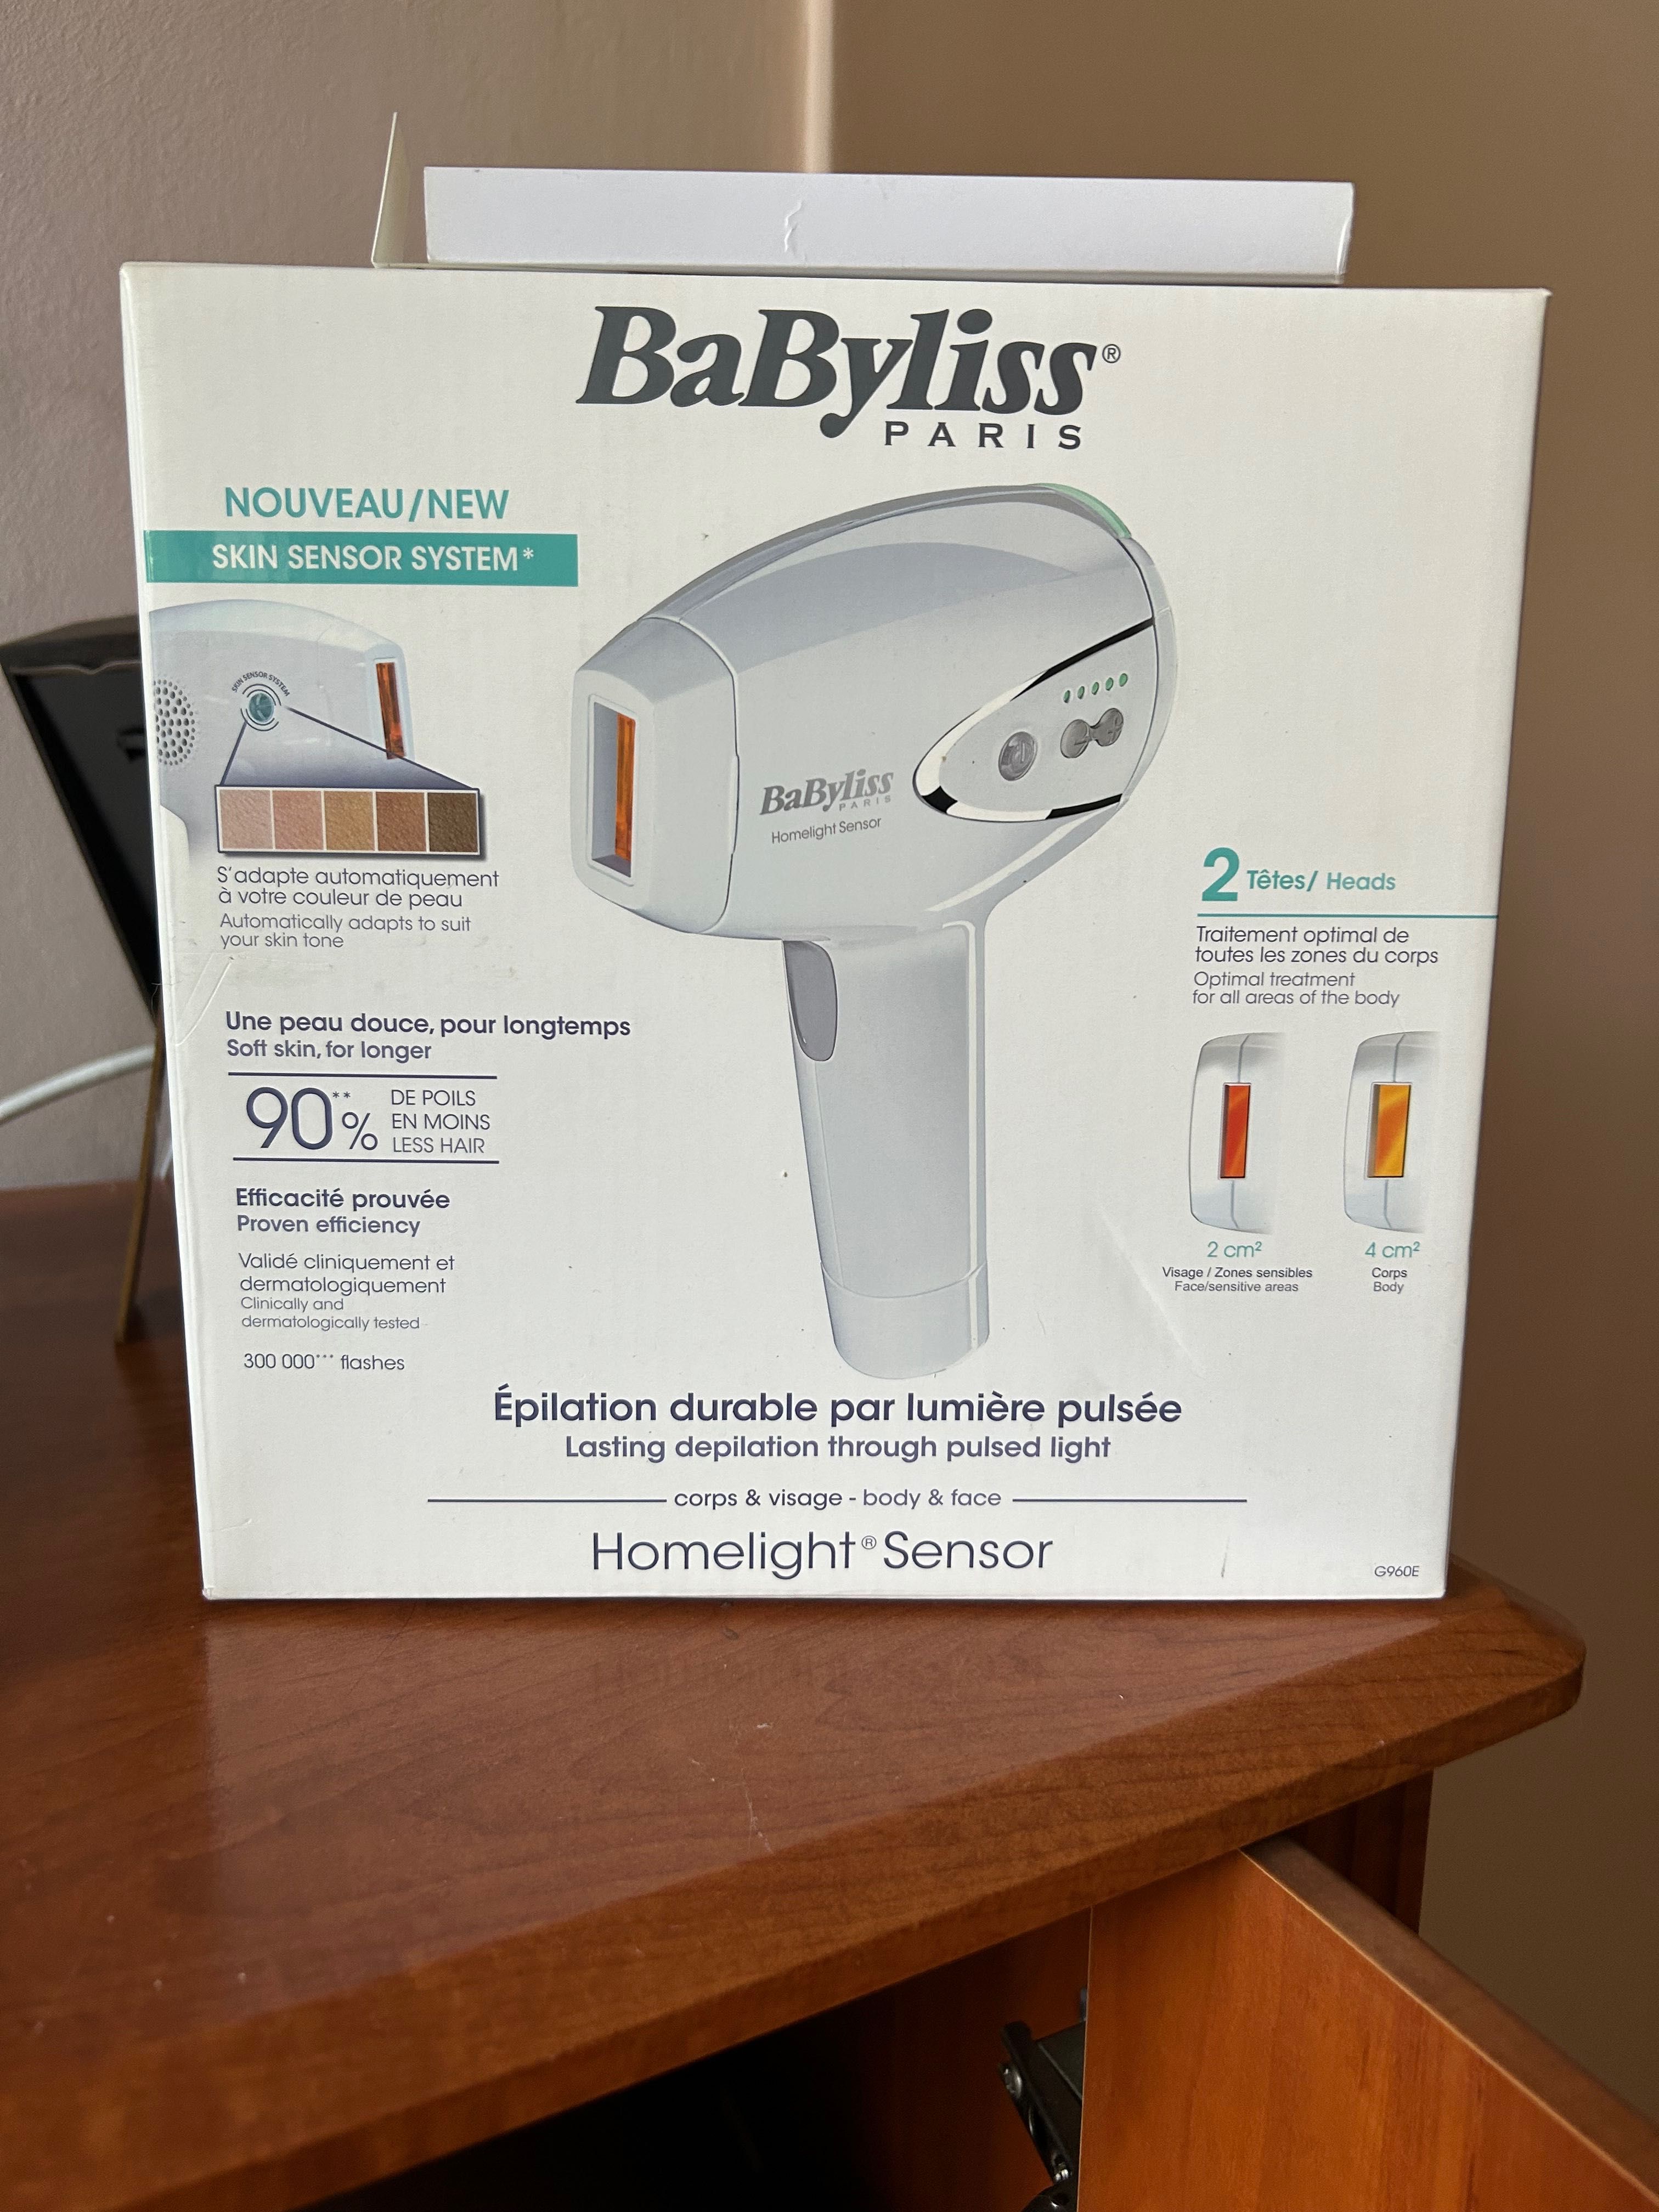 Babyliss homelight sensor